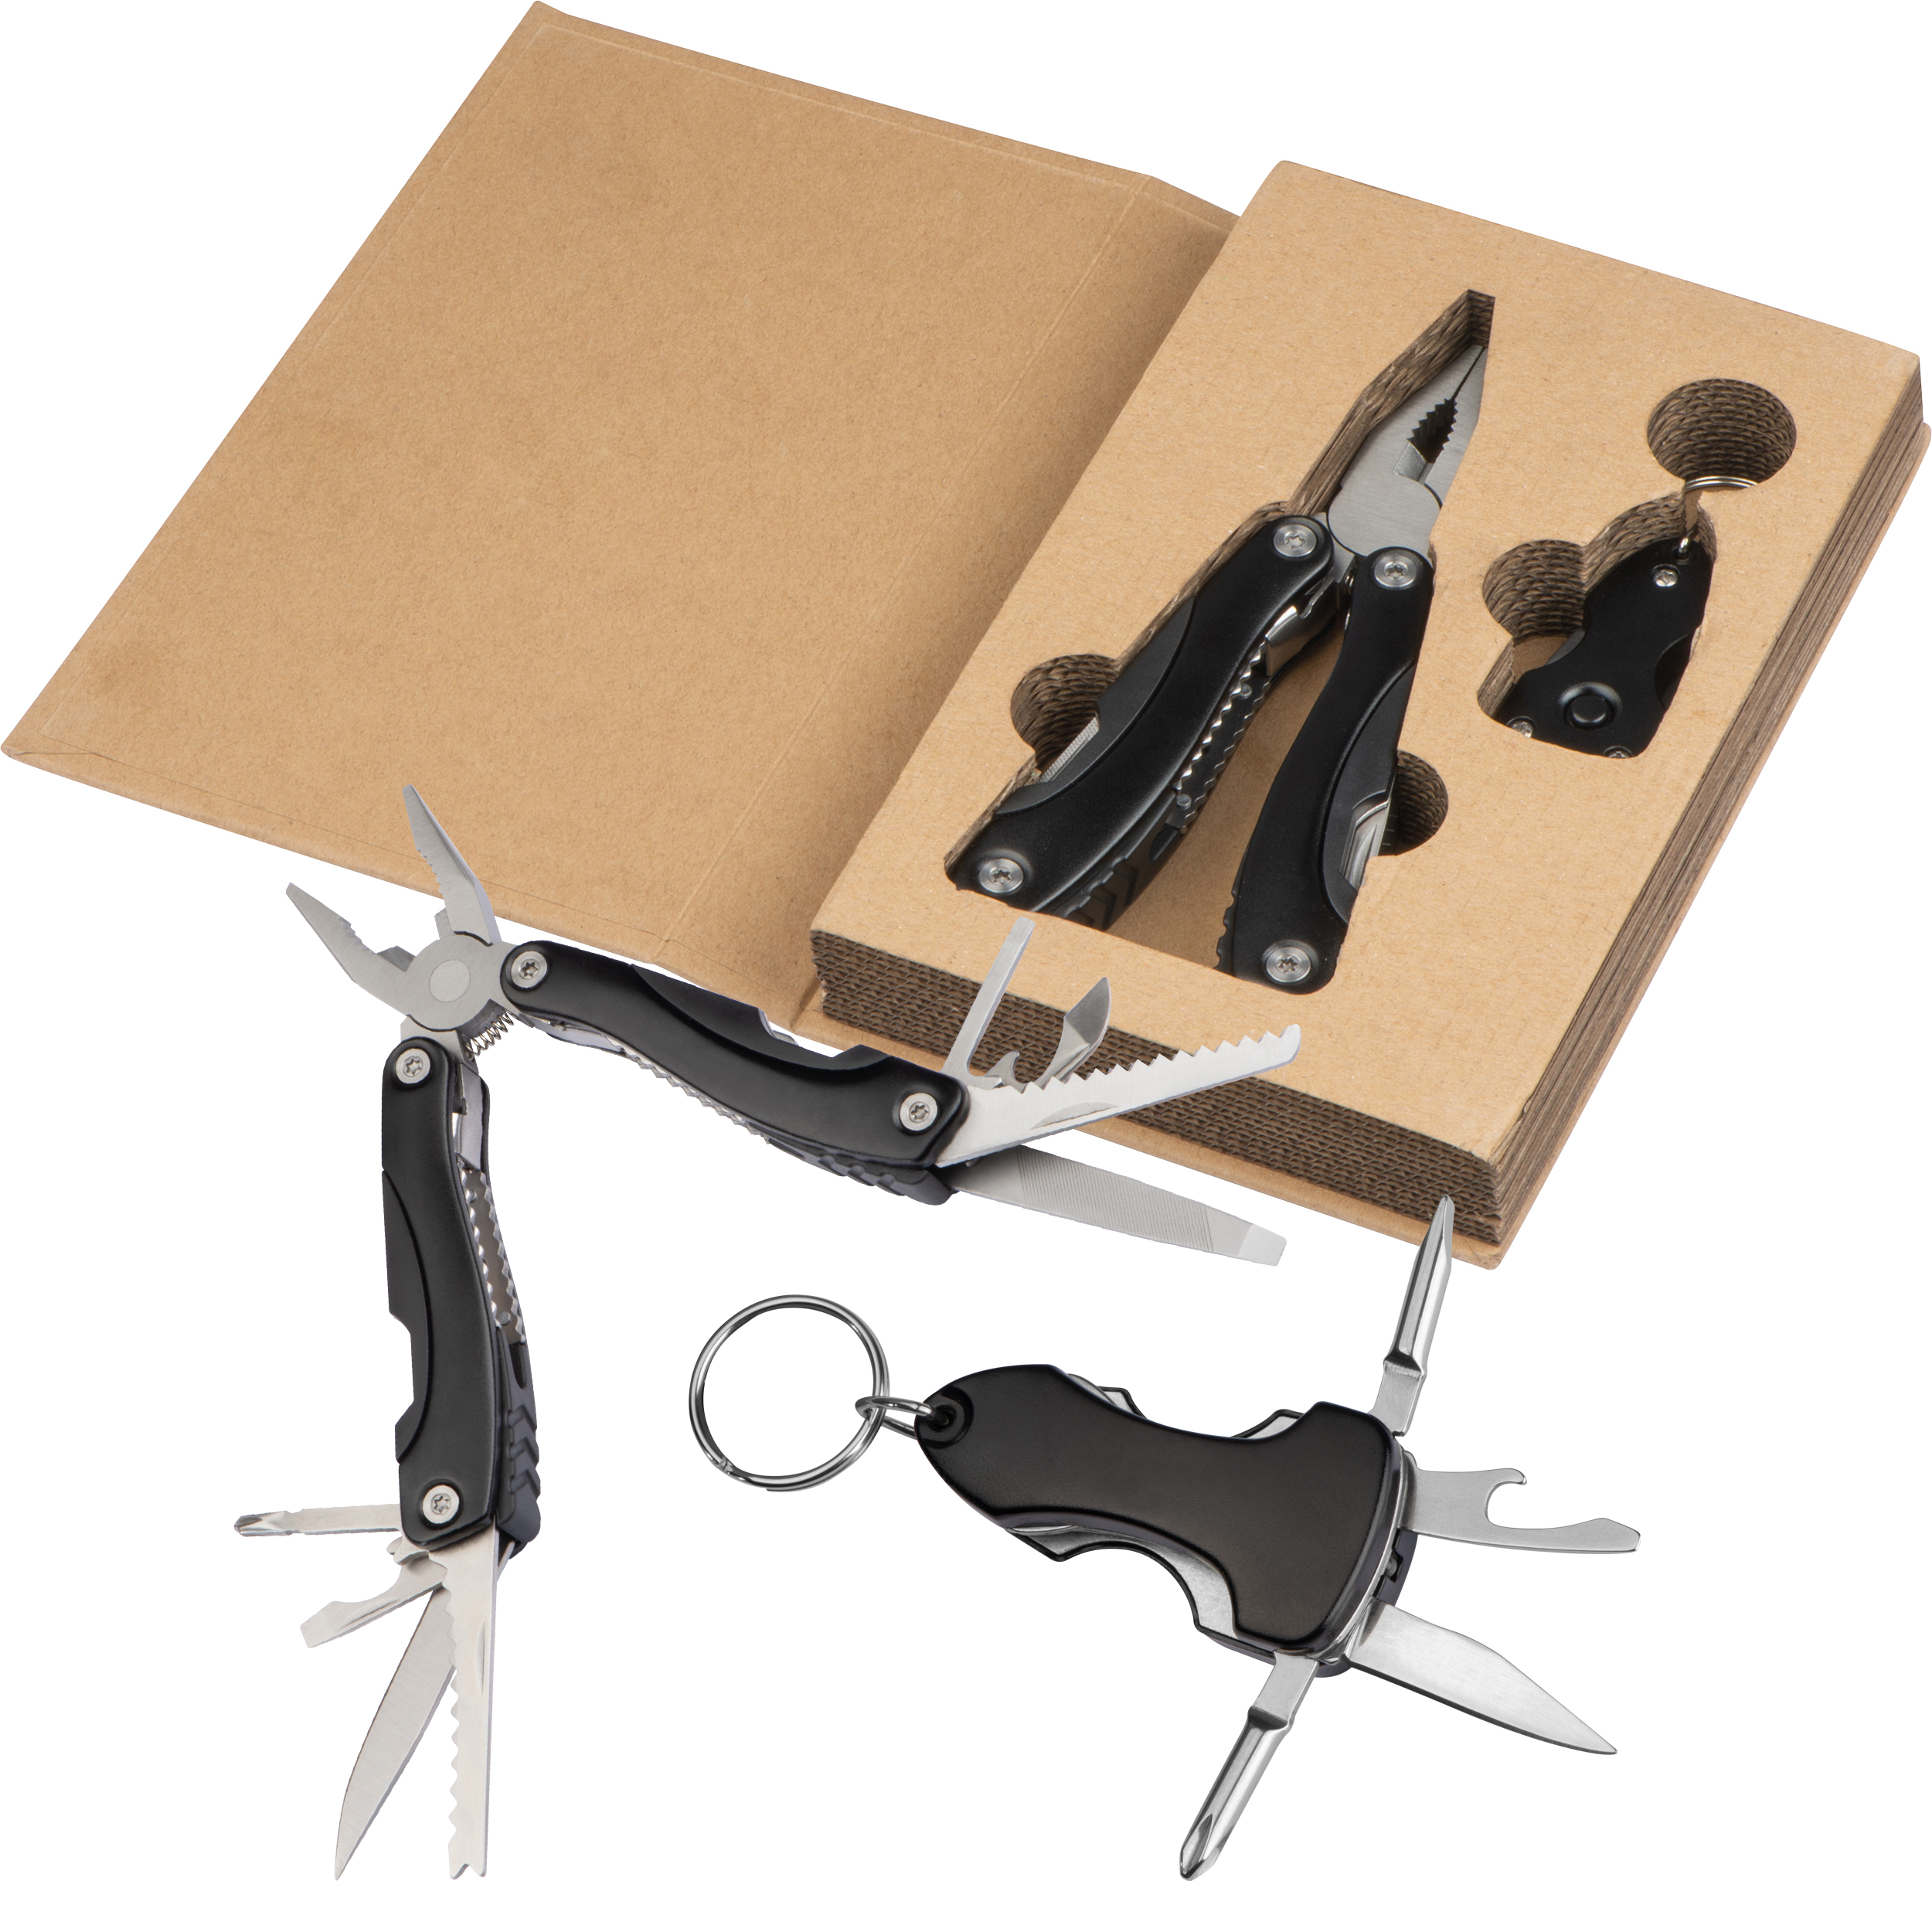 Werkzeugset in Box aus Karton